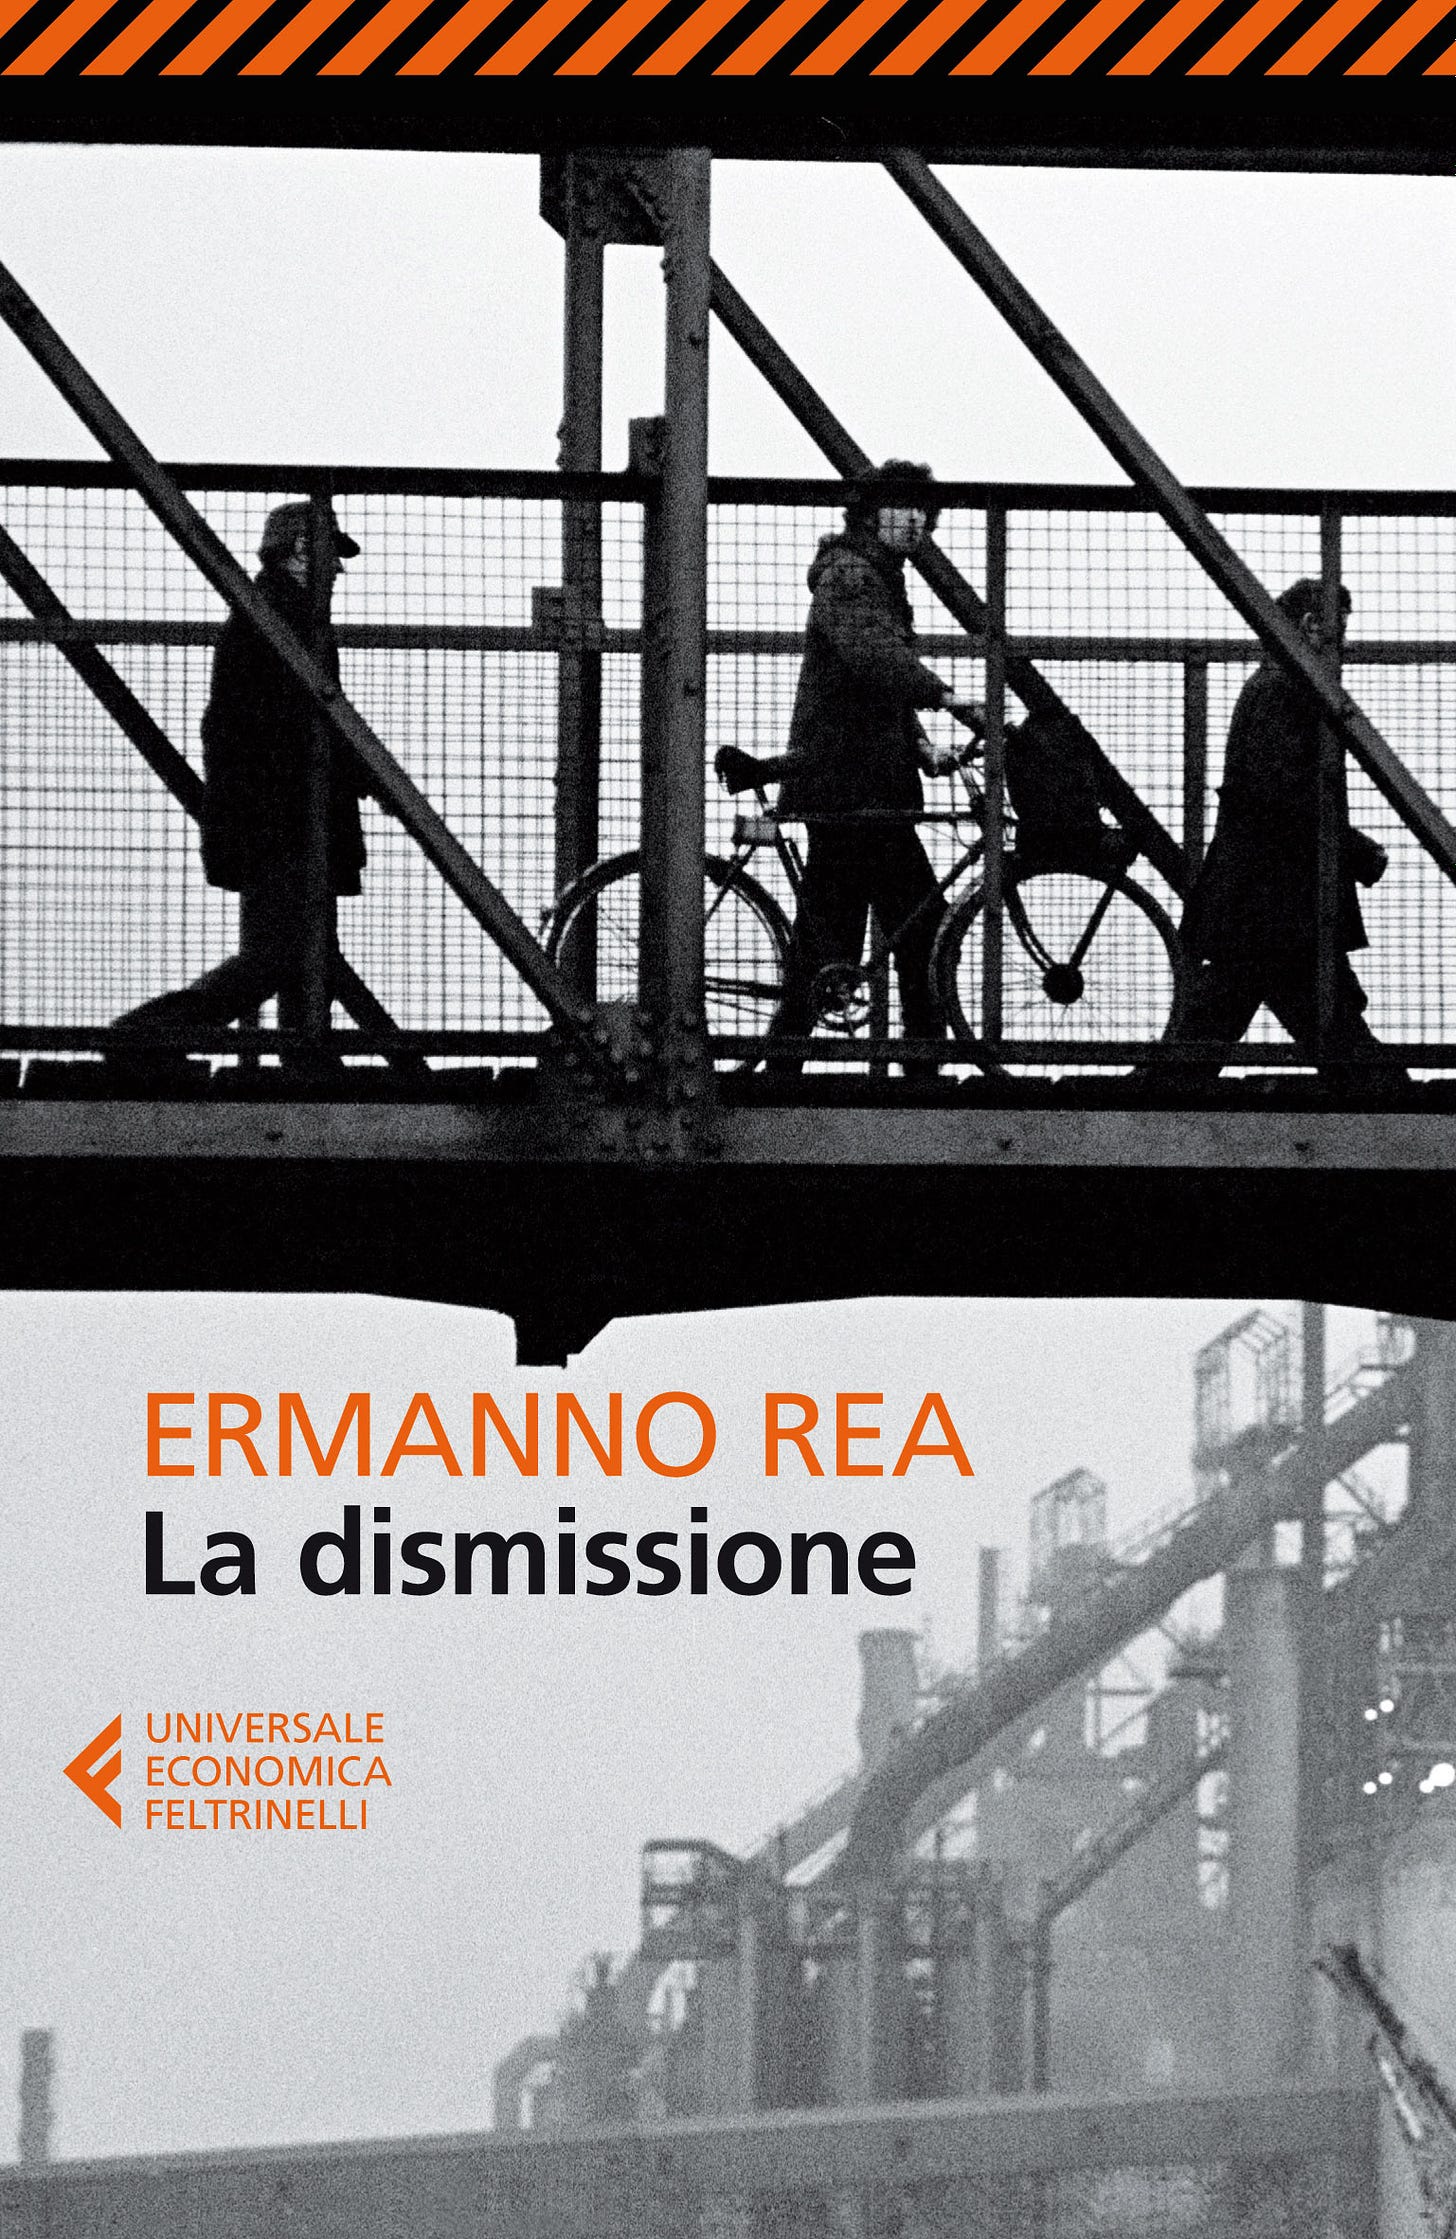 Copertina del libro "La dismissione" di Ermanno Rea